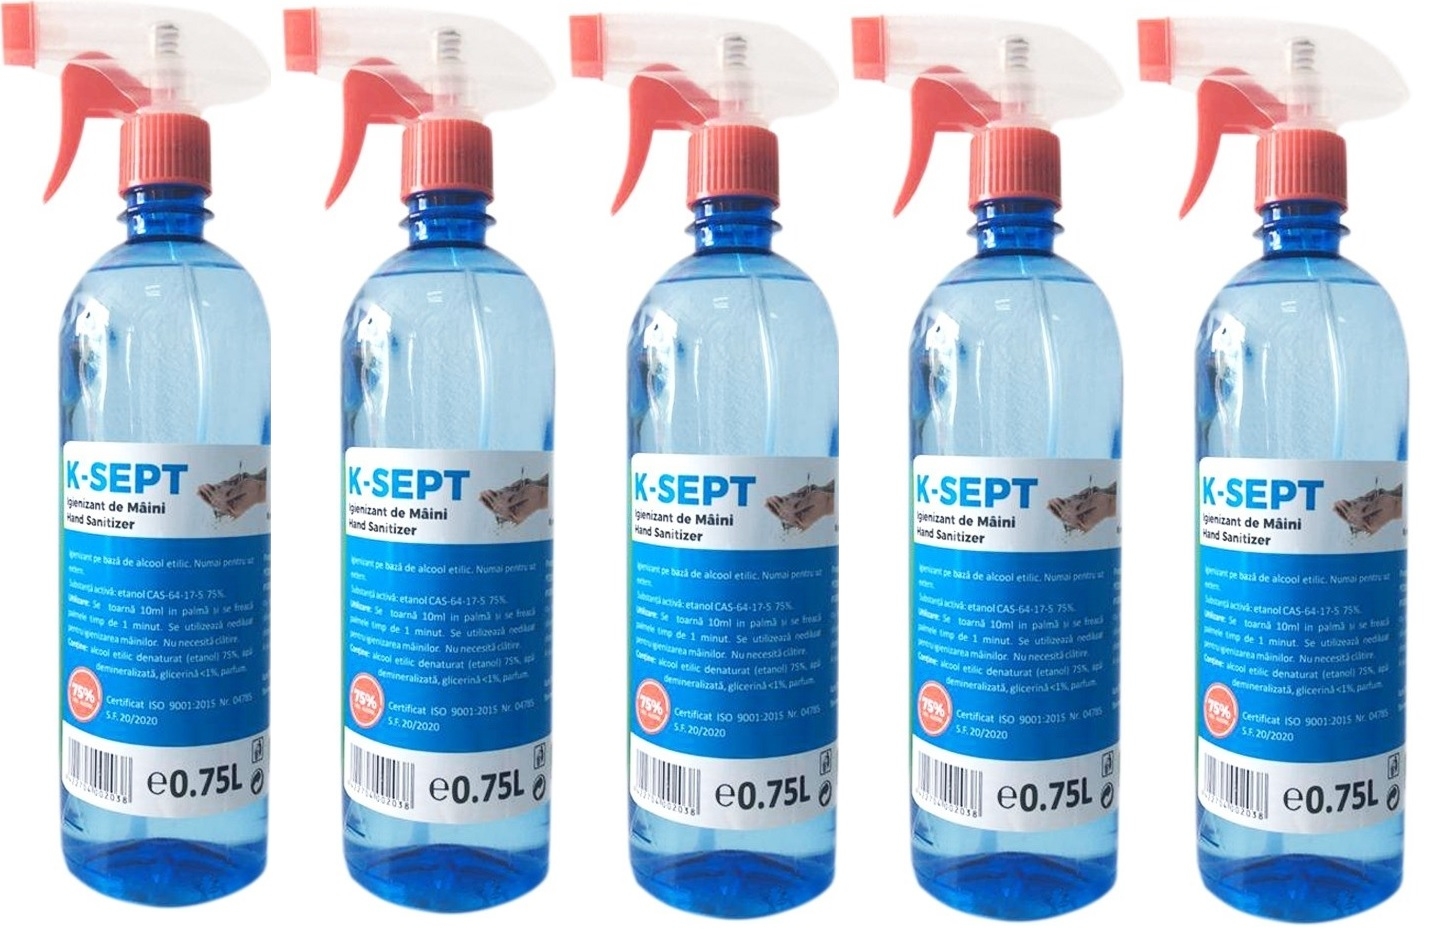 Pachet K-SEPT Virucid Dezinfectant de maini pe baza de alcool 75% cu pulverizator, 750 ml x 5 buc